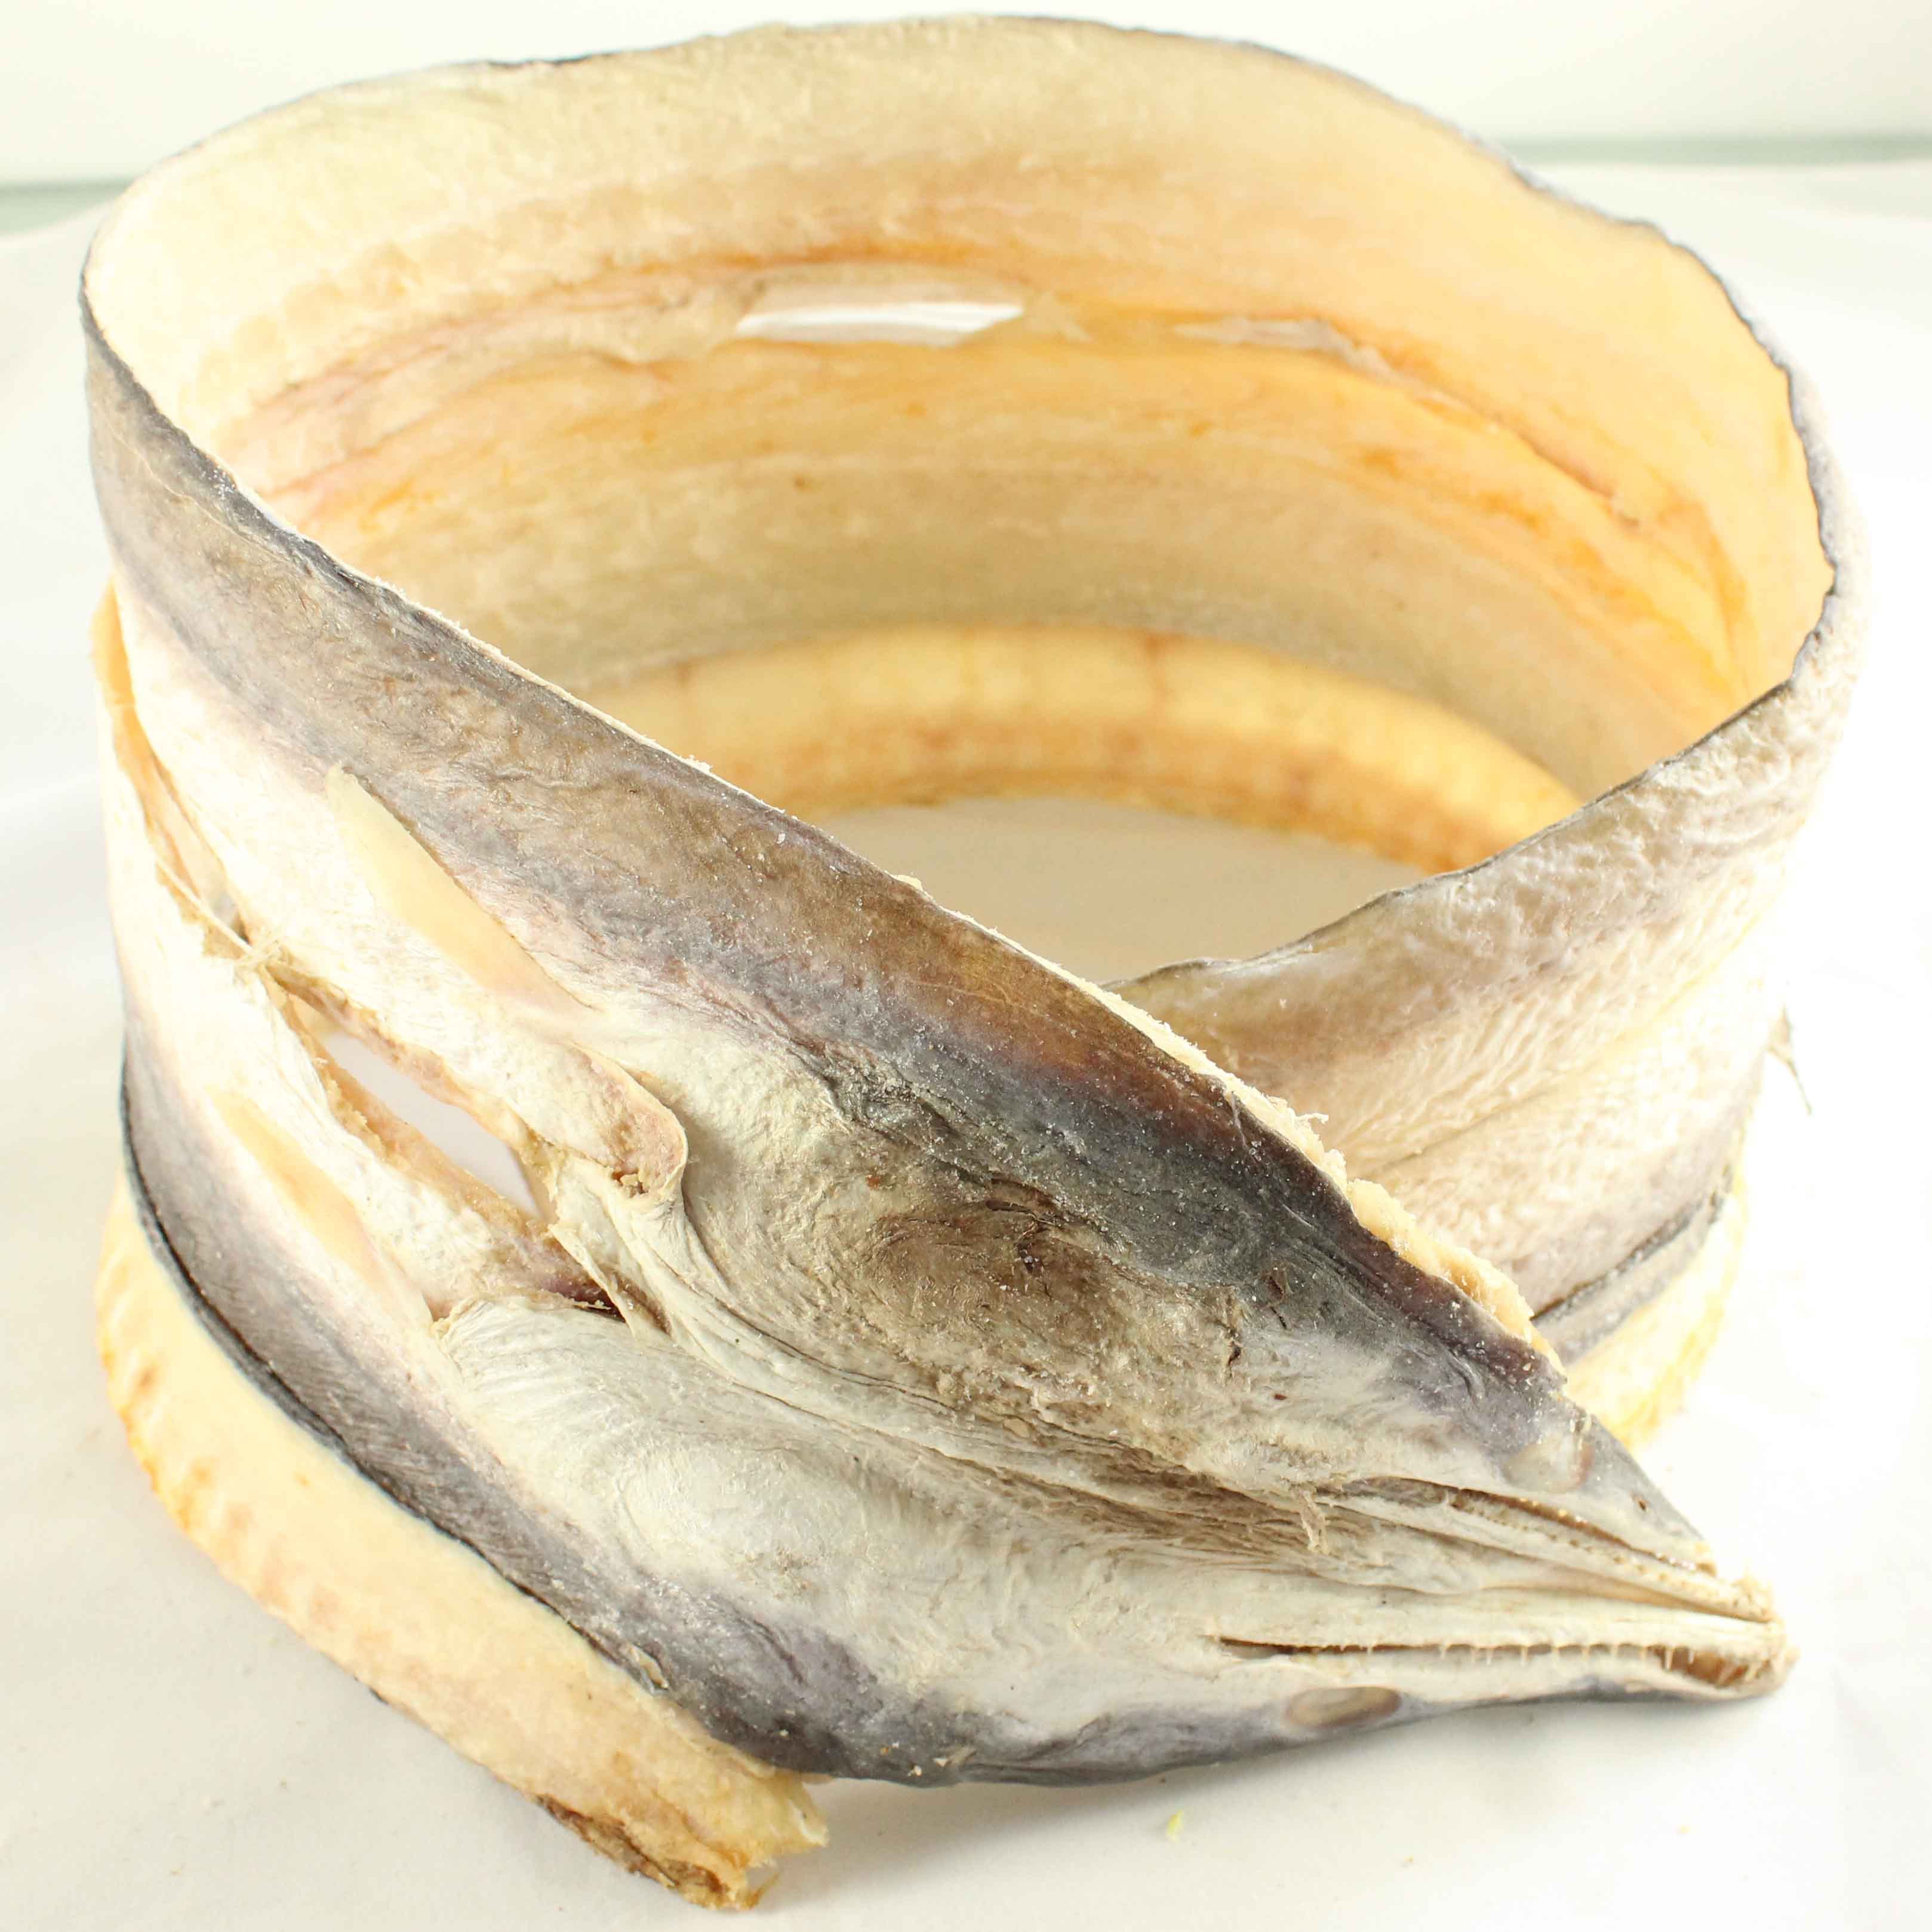 优质鳗鱼干,是以新鲜鳗鱼为原料,经清洗处理,切割,晒干而成的肉干